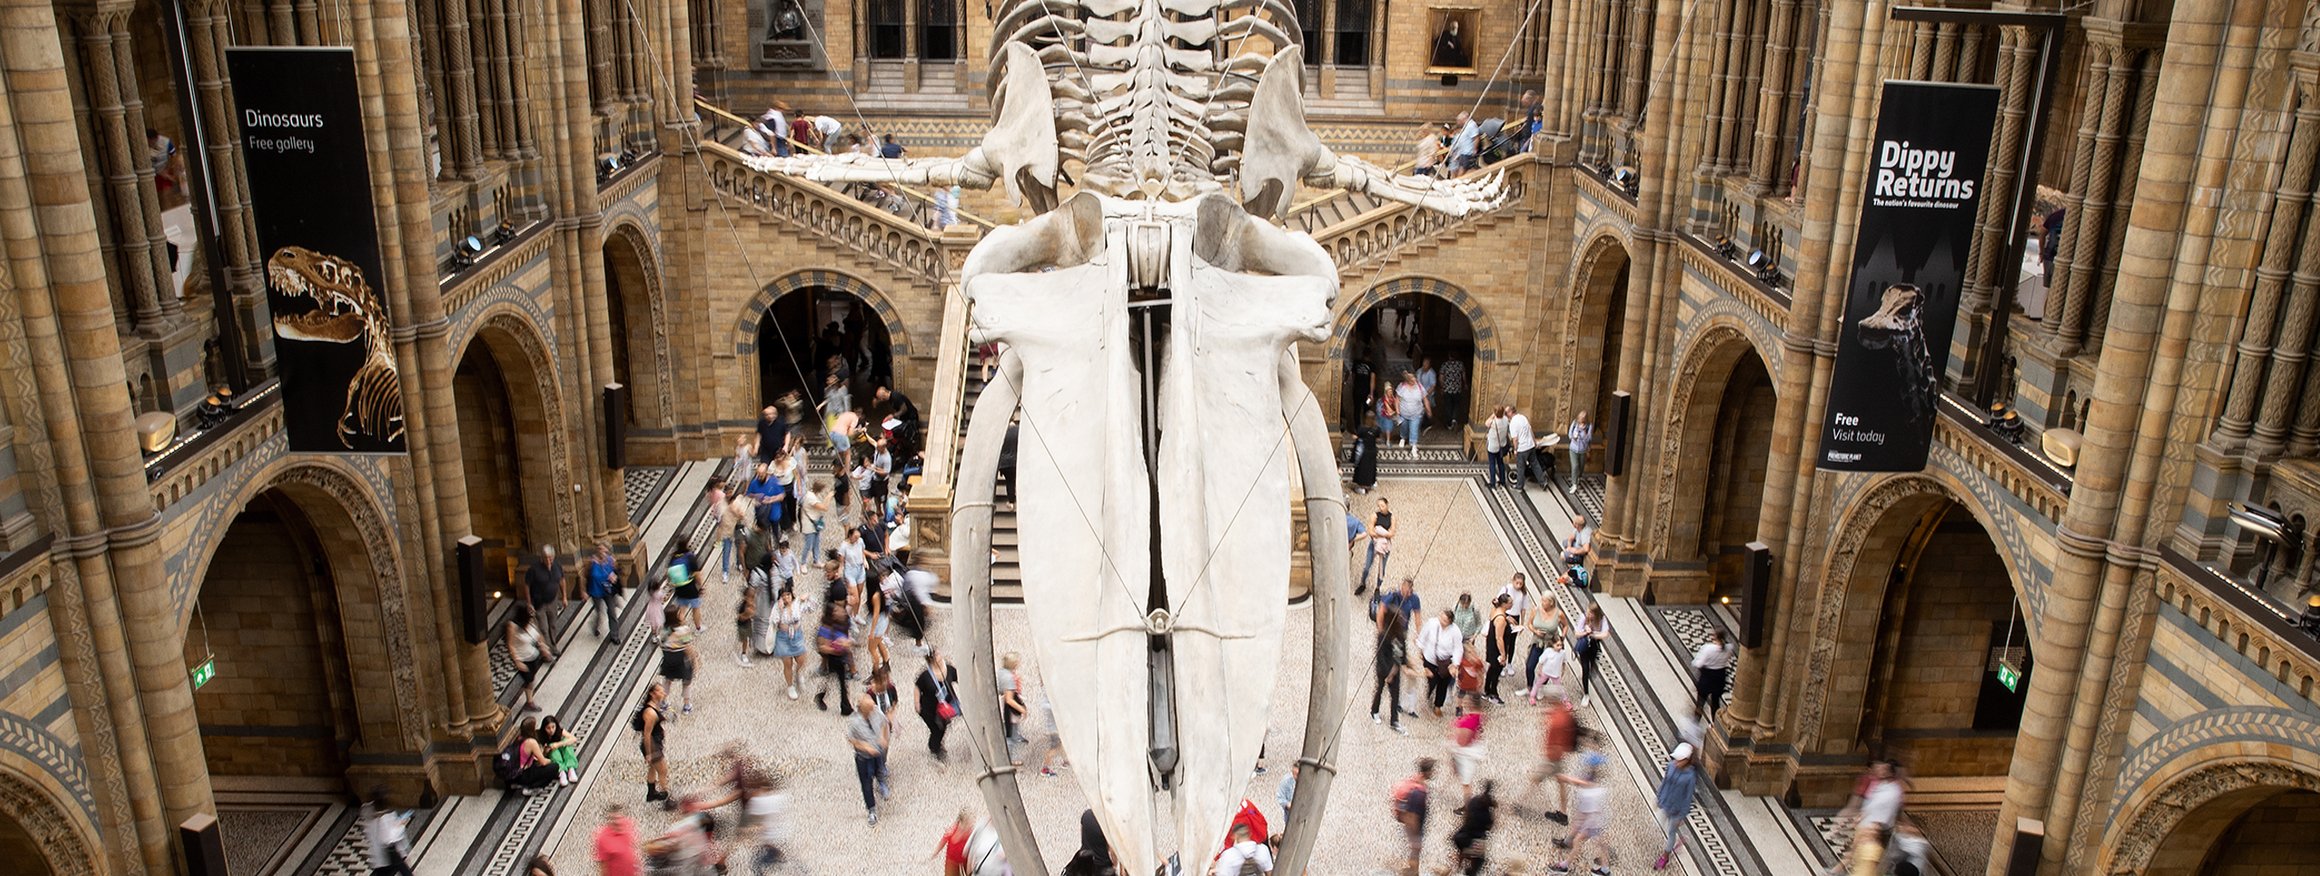 Ein Walskelett ist ein einem Naturkundemuseum umringt von Besuchern